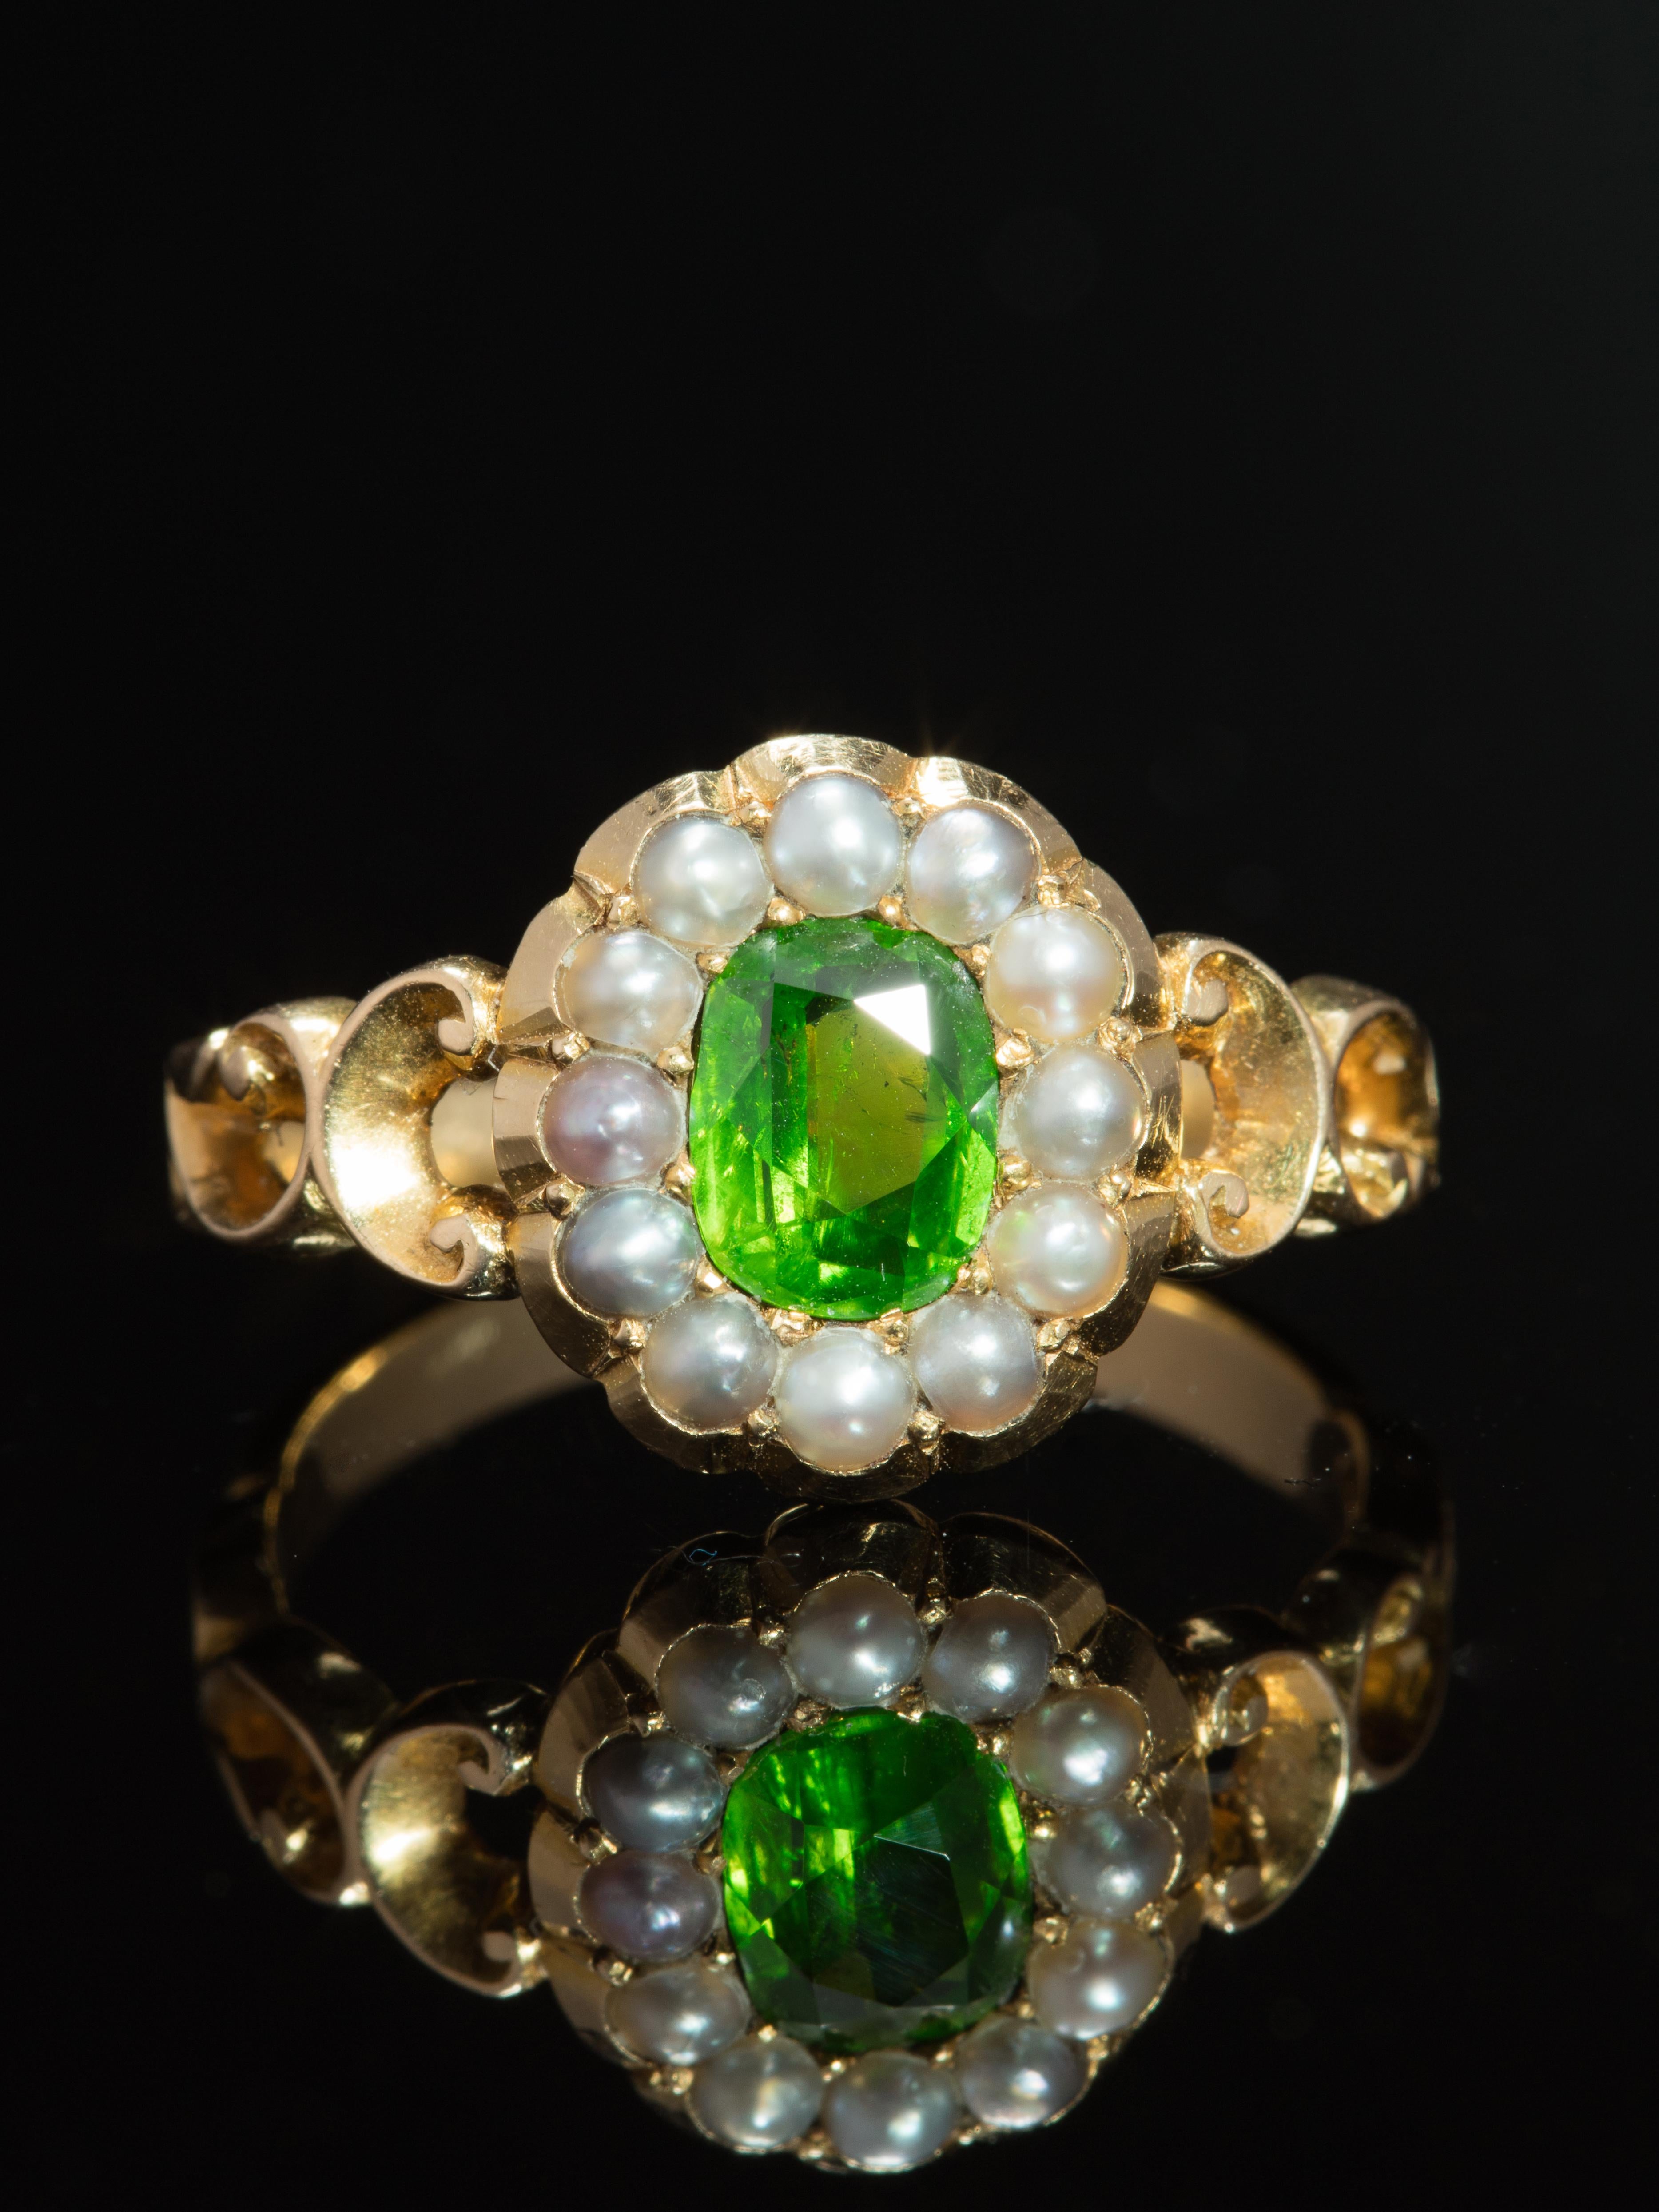 Voller Romantik und Symbolik ist dieser dramatische Blumenring mit einem leuchtenden, sattgrünen Demantoid-Granat, der von glänzenden, zarten Perlen in einem klassischen Cluster-Design ergänzt wird. 

Sehr beliebt in den späten 1800er und frühen